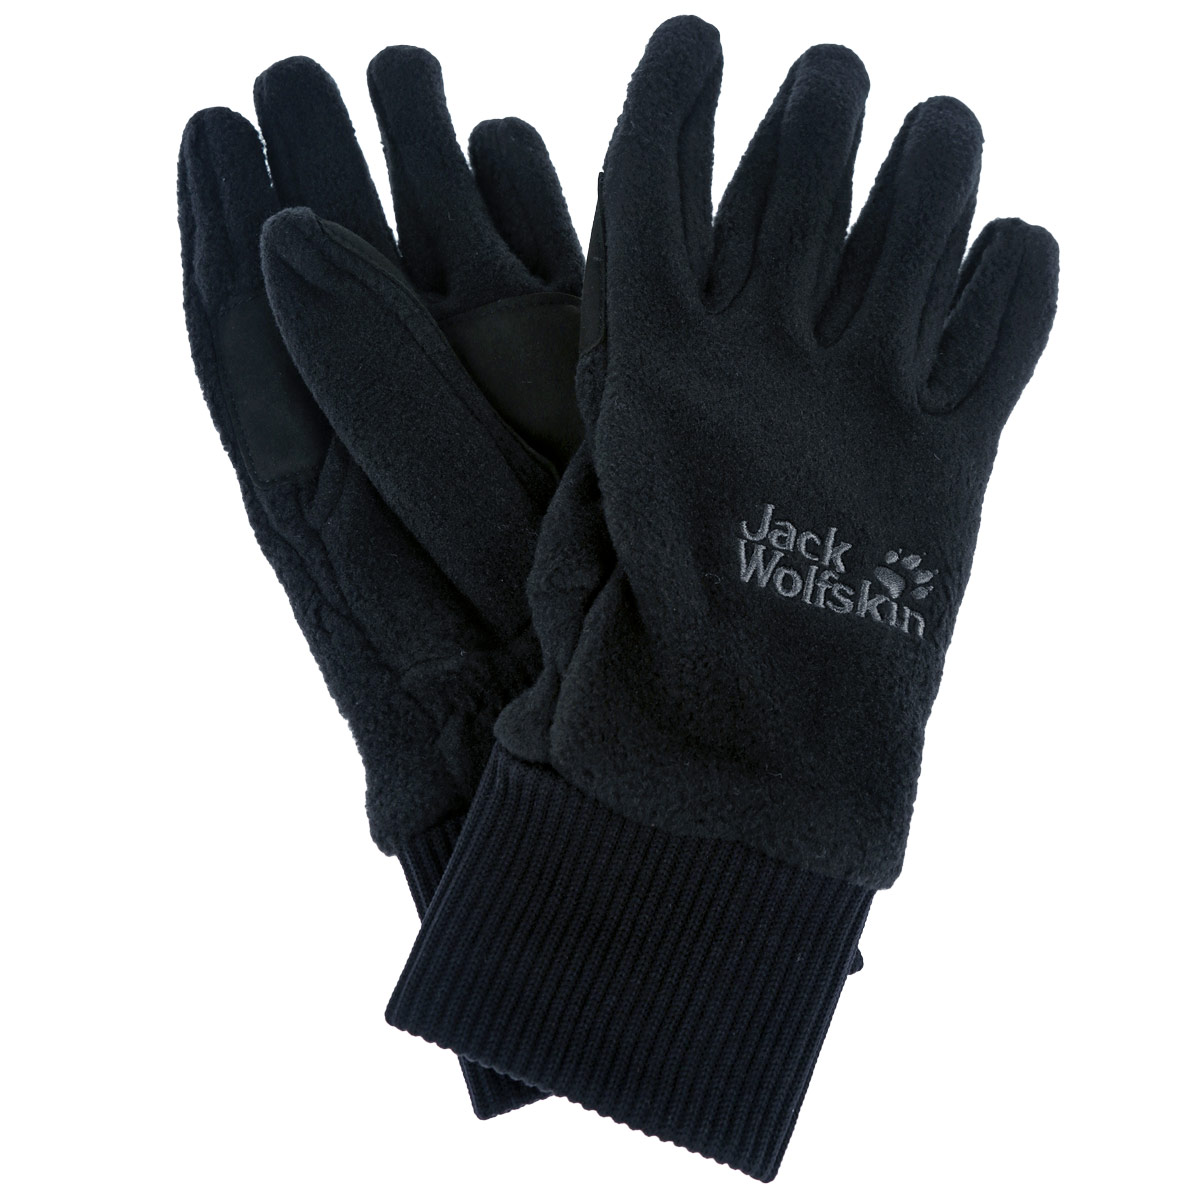 Перчатки унисекс Jack Wolfskin Vertigo Glove, цвет: черный. 1901751-6000. Размер M (8/8,5)